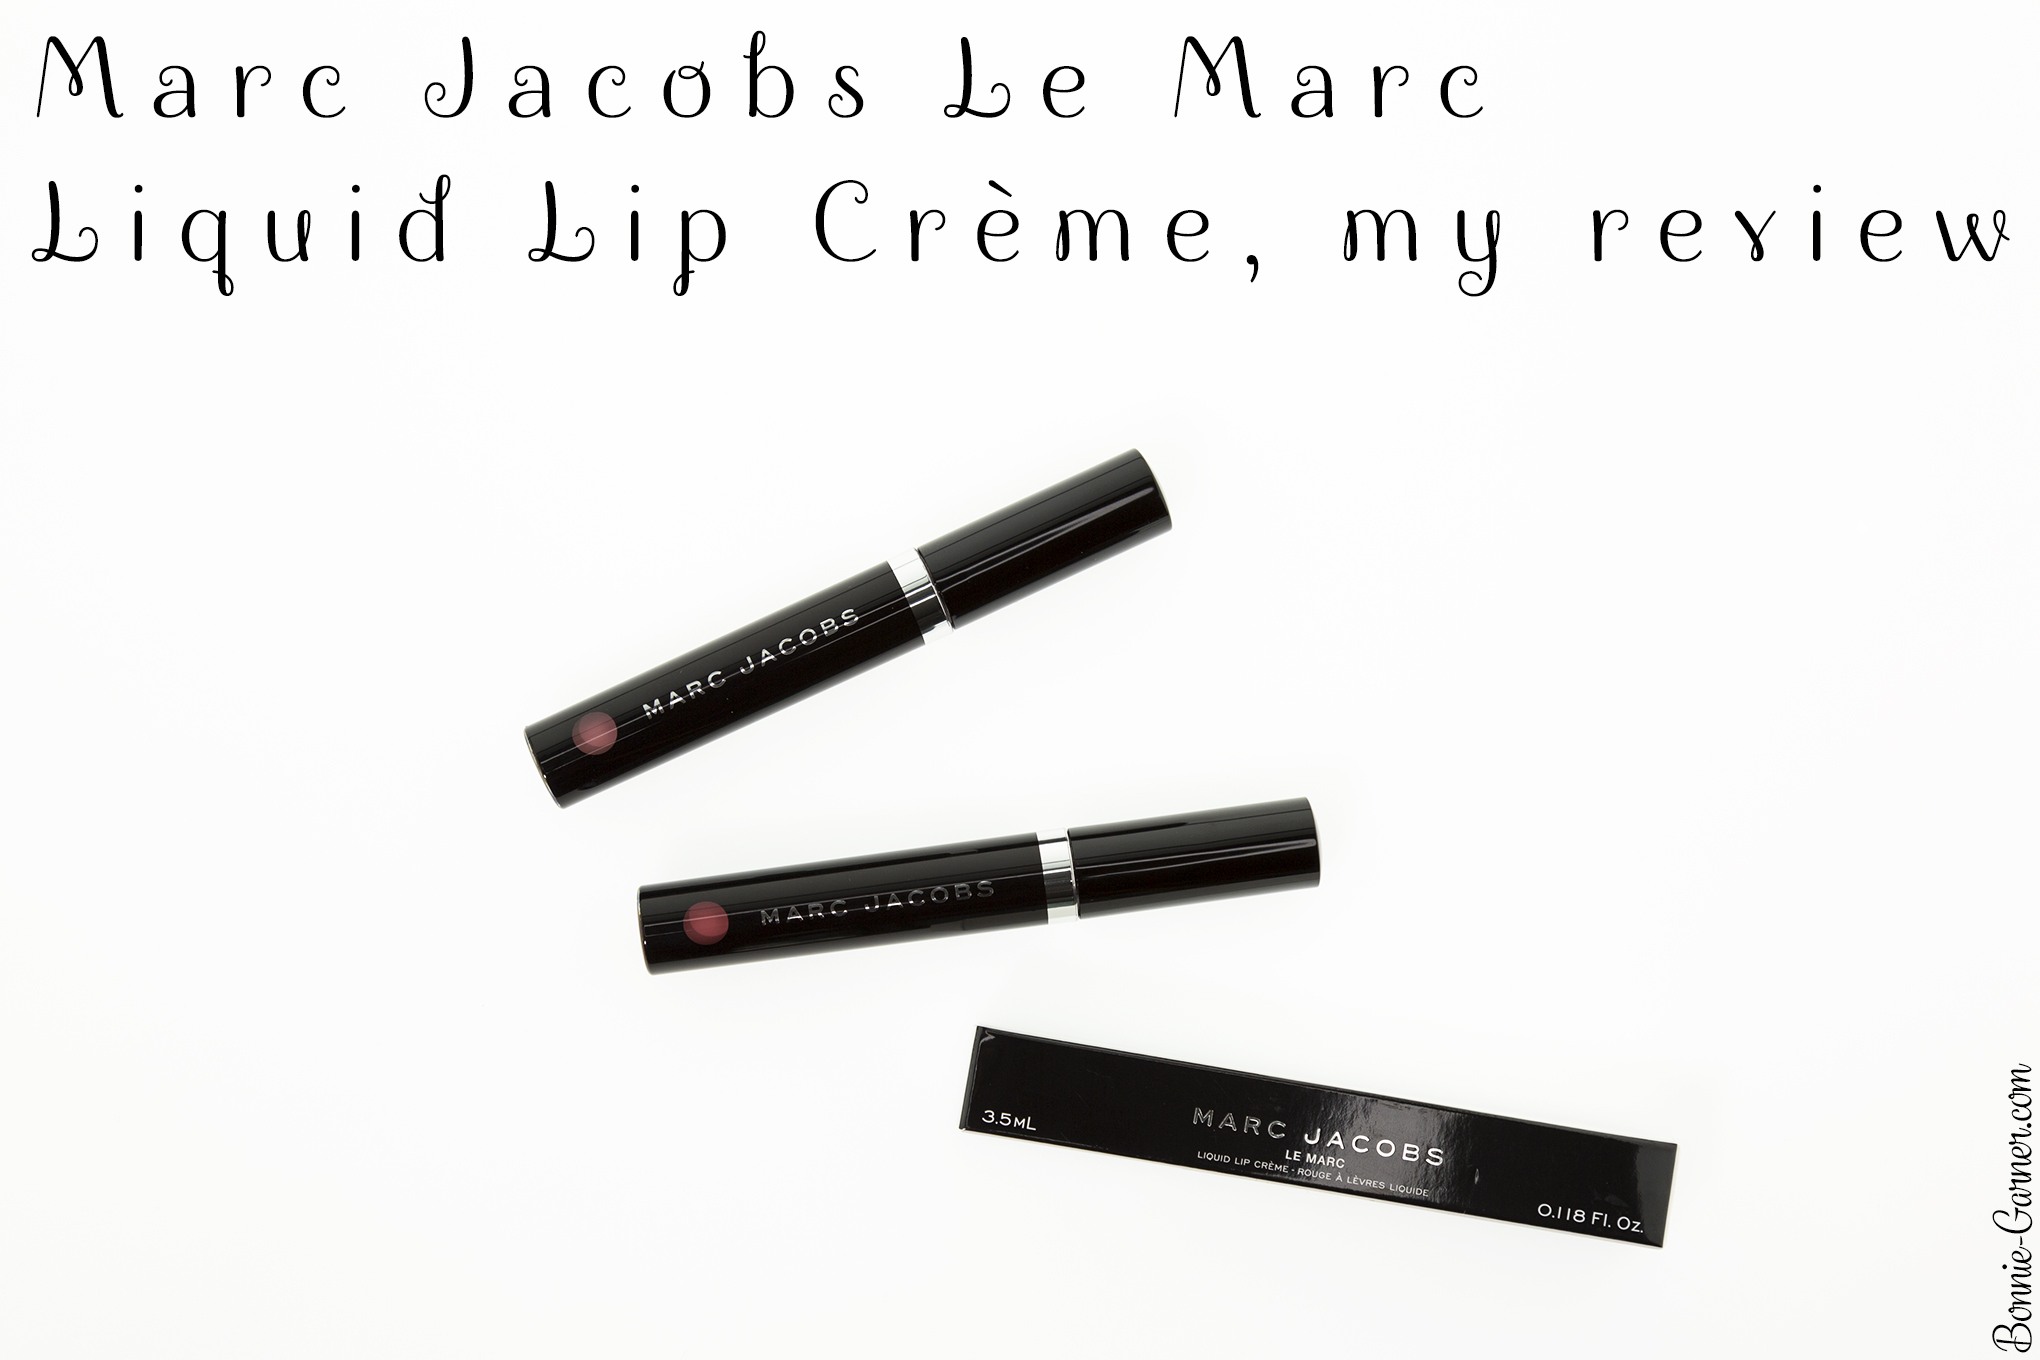 Marc Jacobs Le Marc Liquid Lip Crème, my review